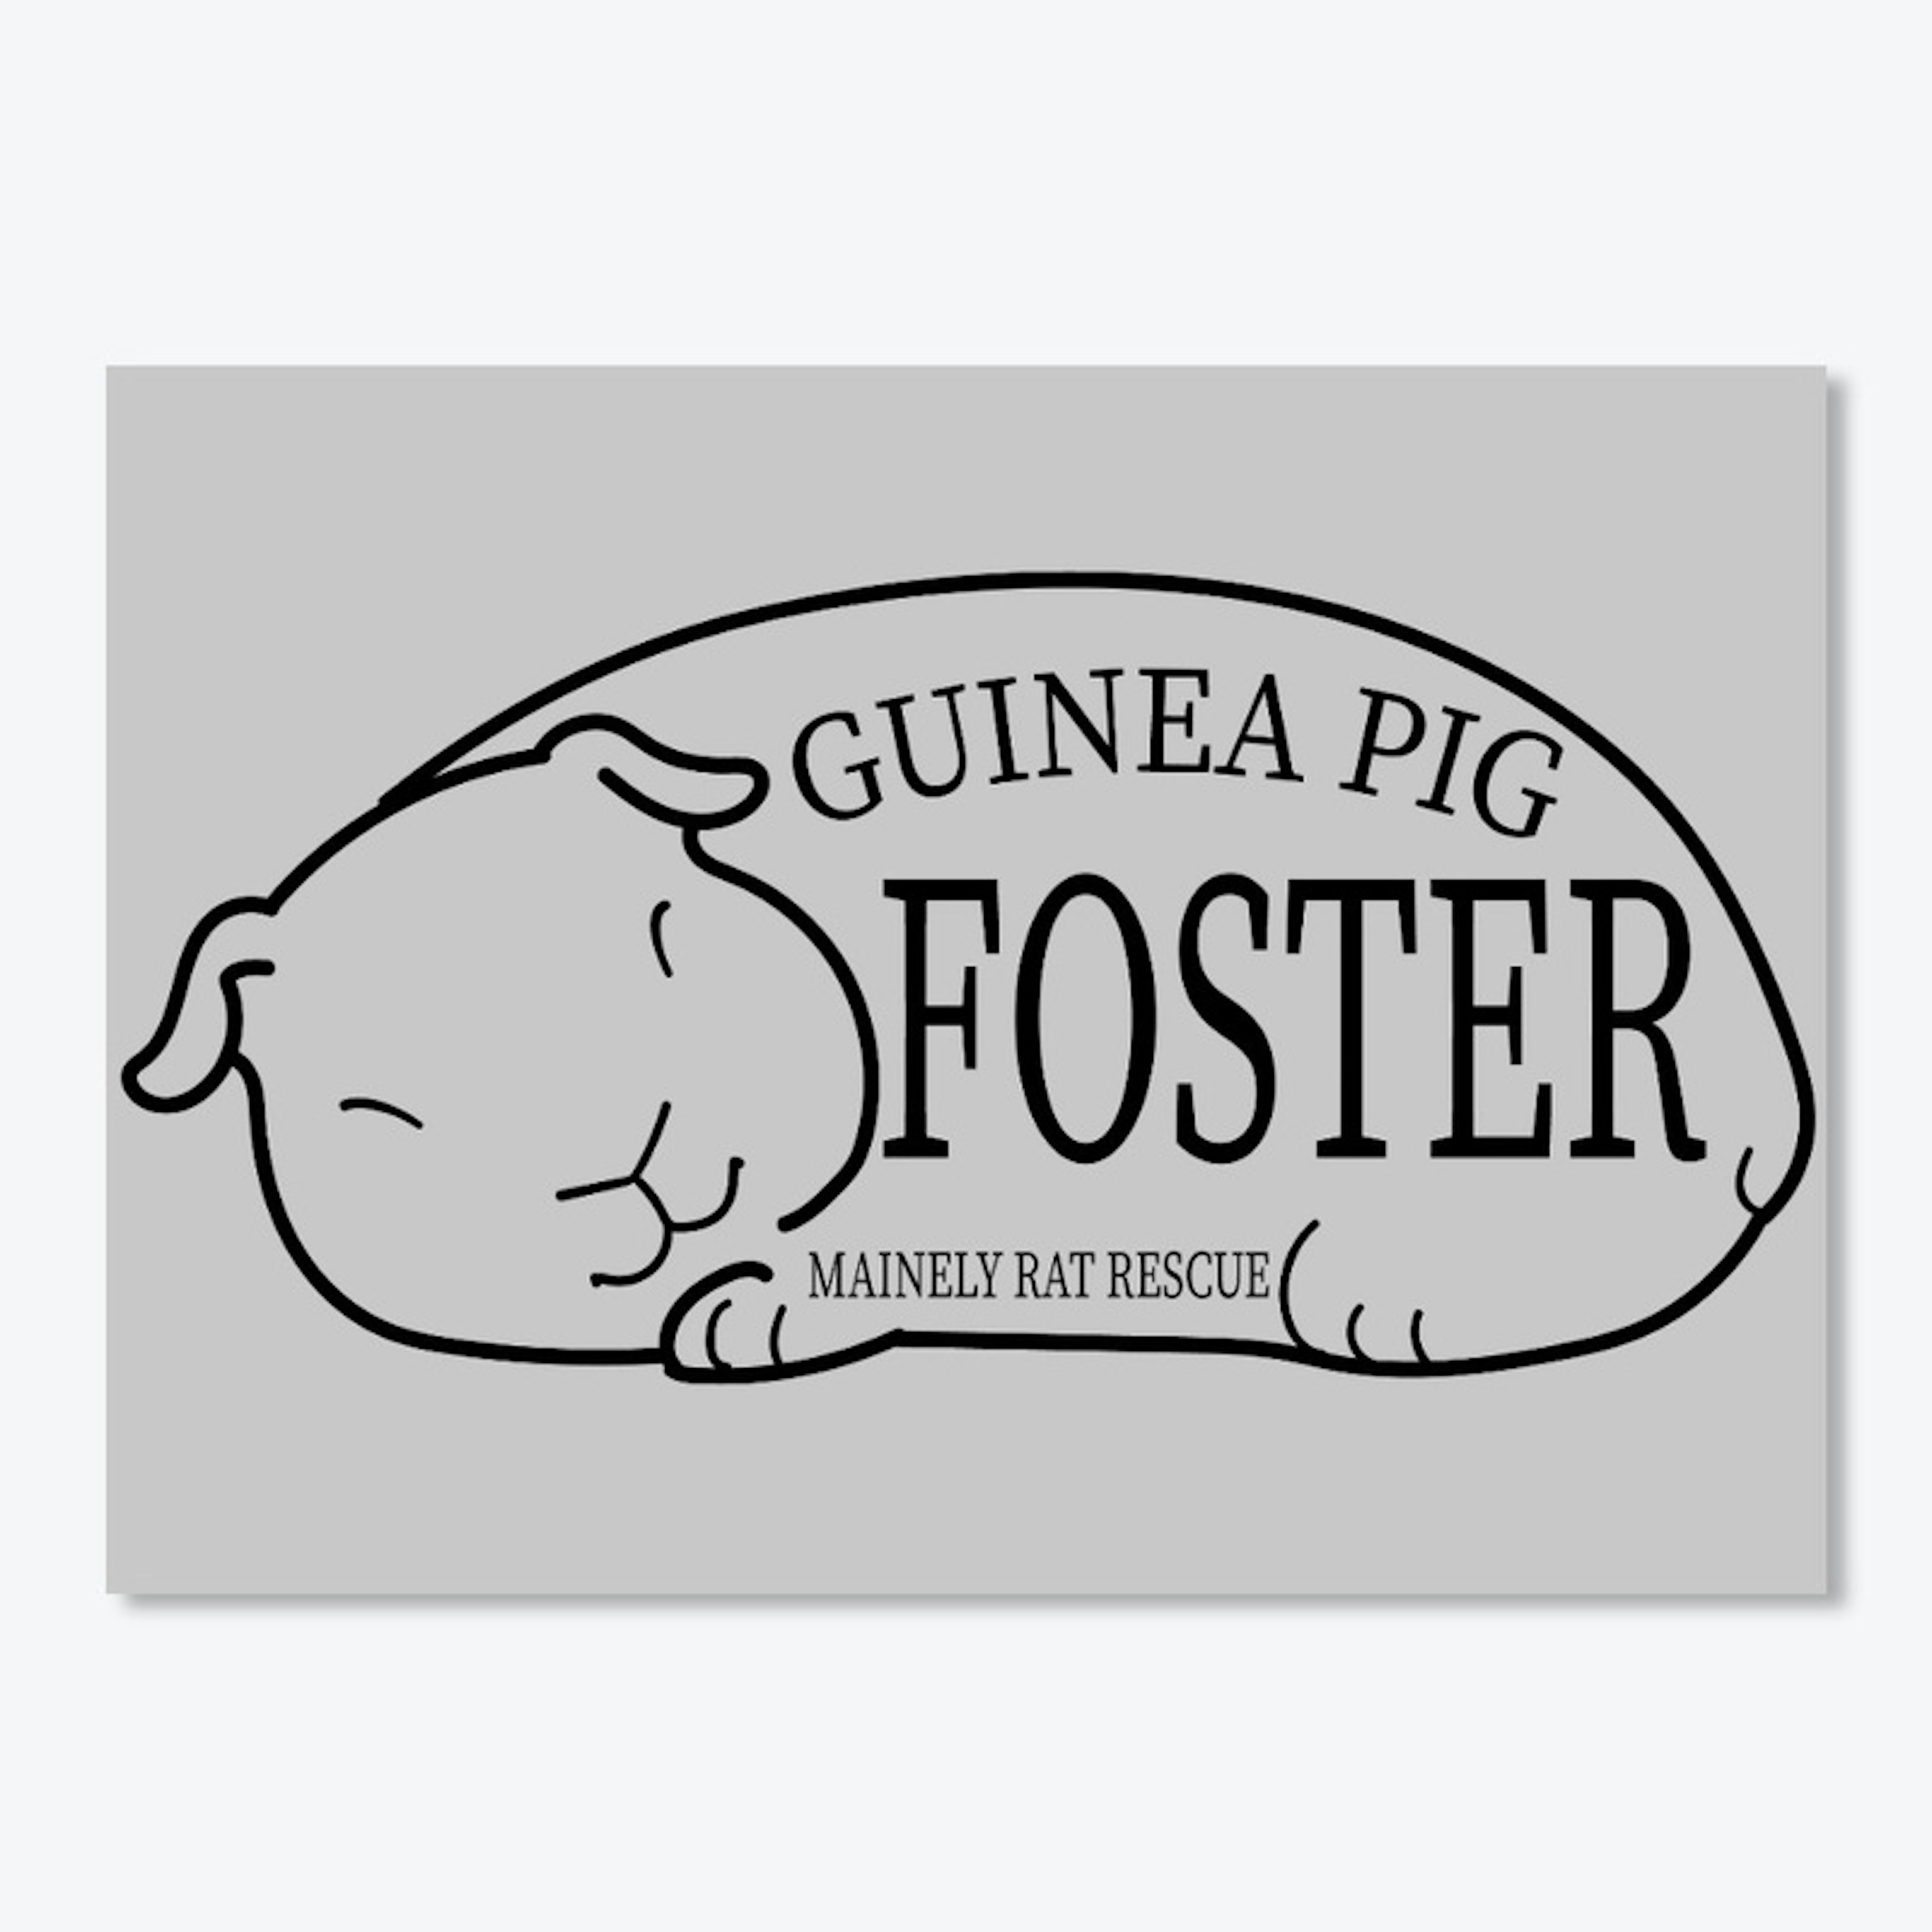 Guinea Pig Foster